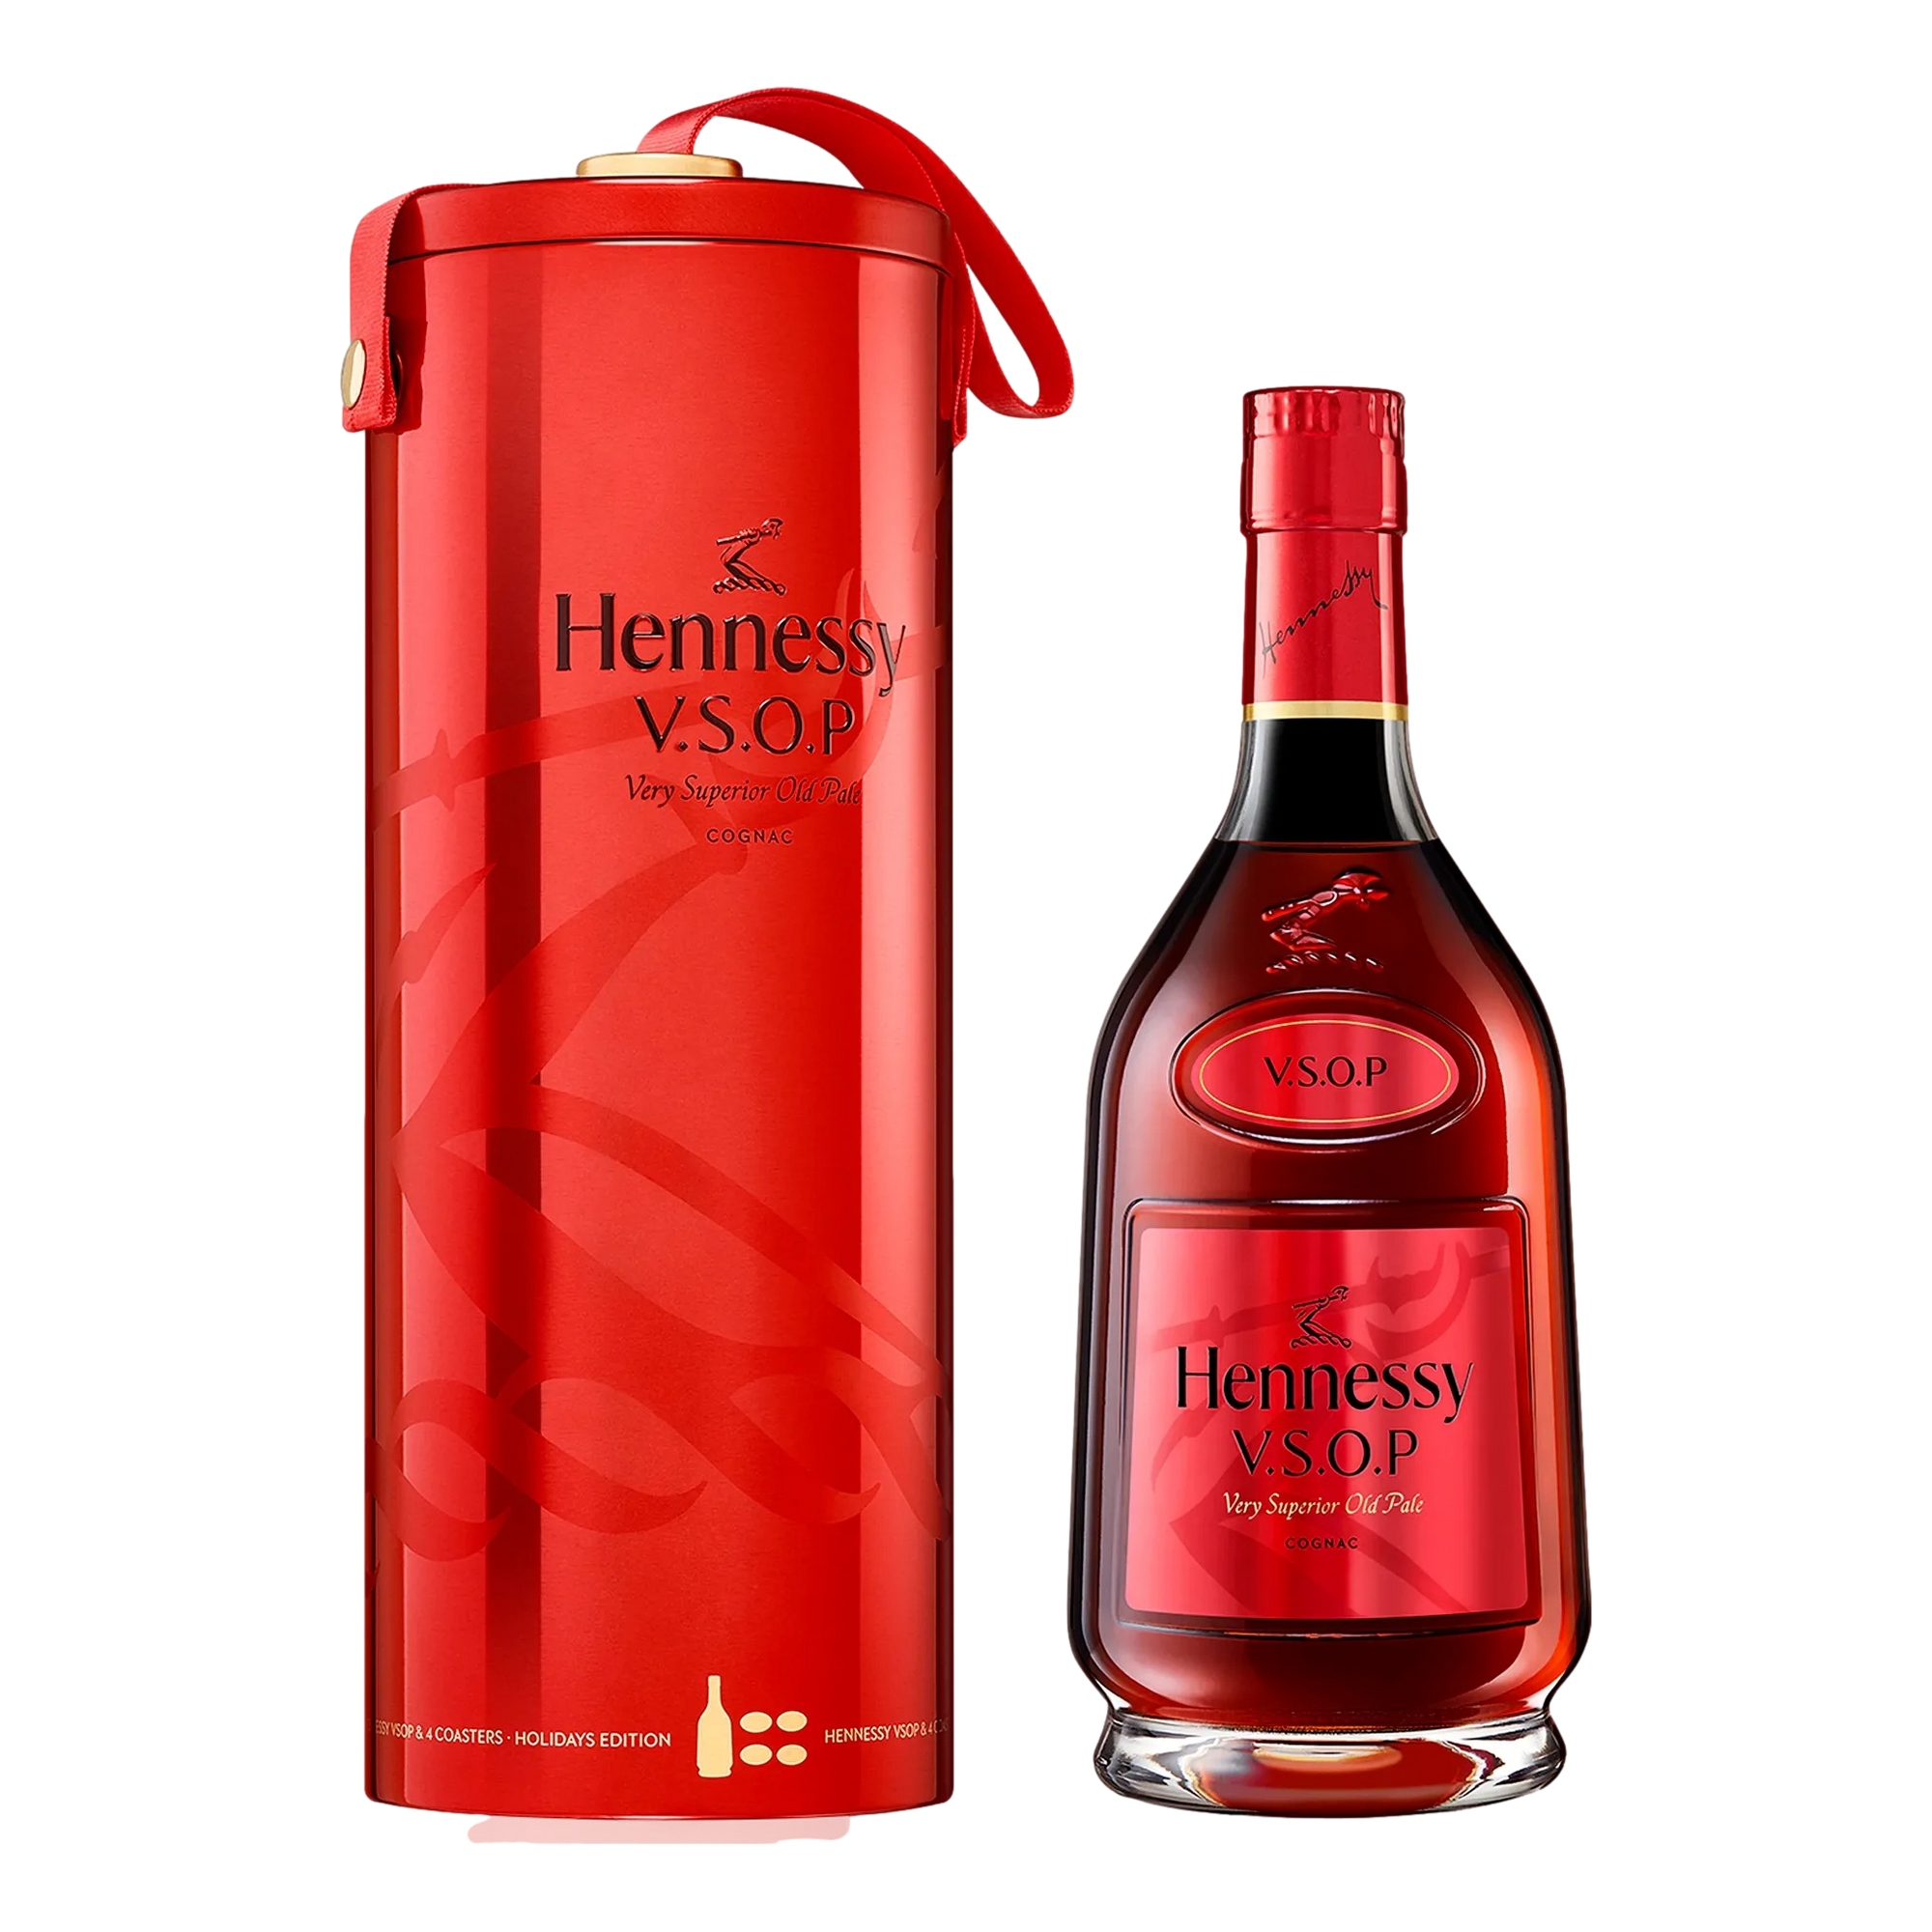 Hennessy XO Holiday Gift set